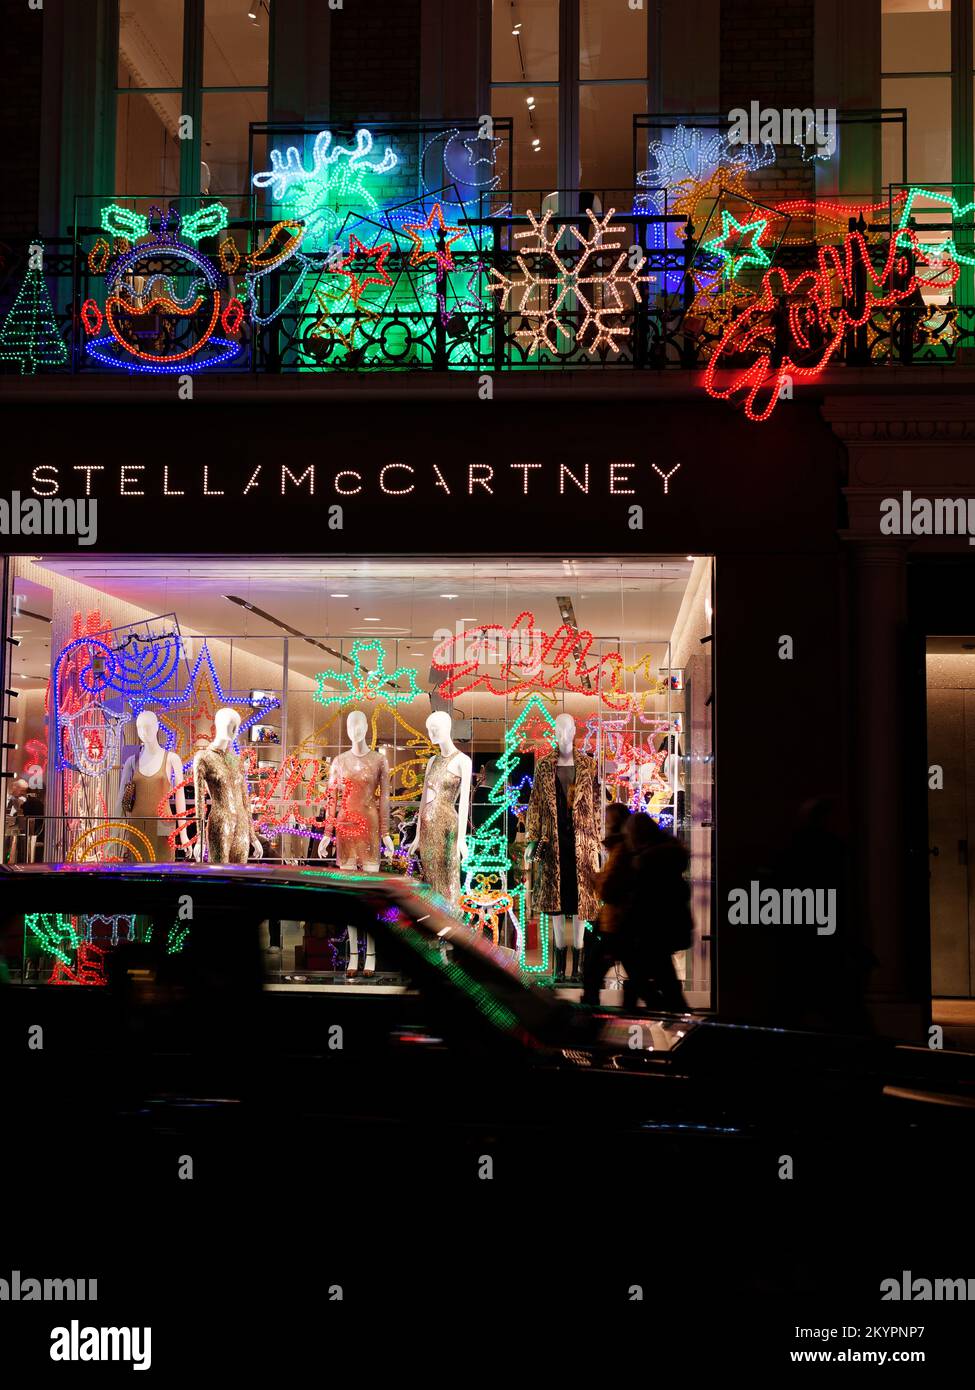 Stella McCartney famoso negozio di moda Christmas Display come una macchina passa da sfocato dal movimento, Old Bond Street, Londra. Foto Stock